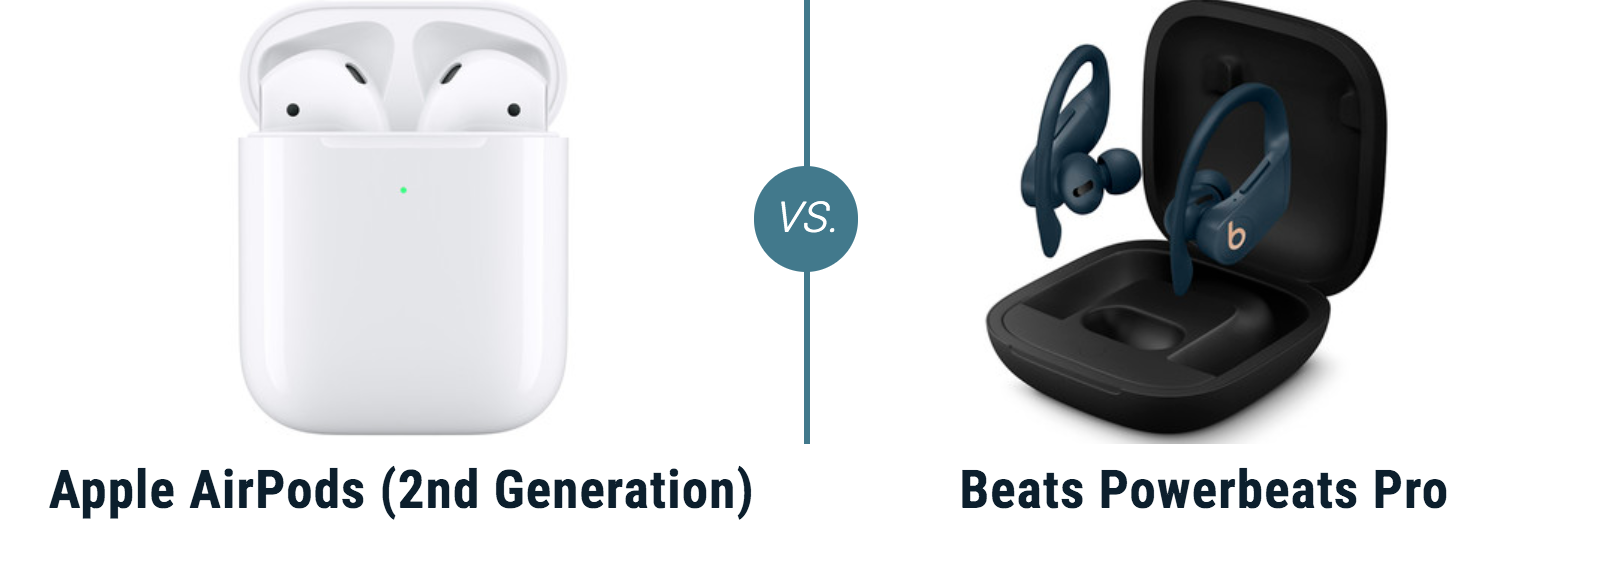 apple wireless earbuds vs beats